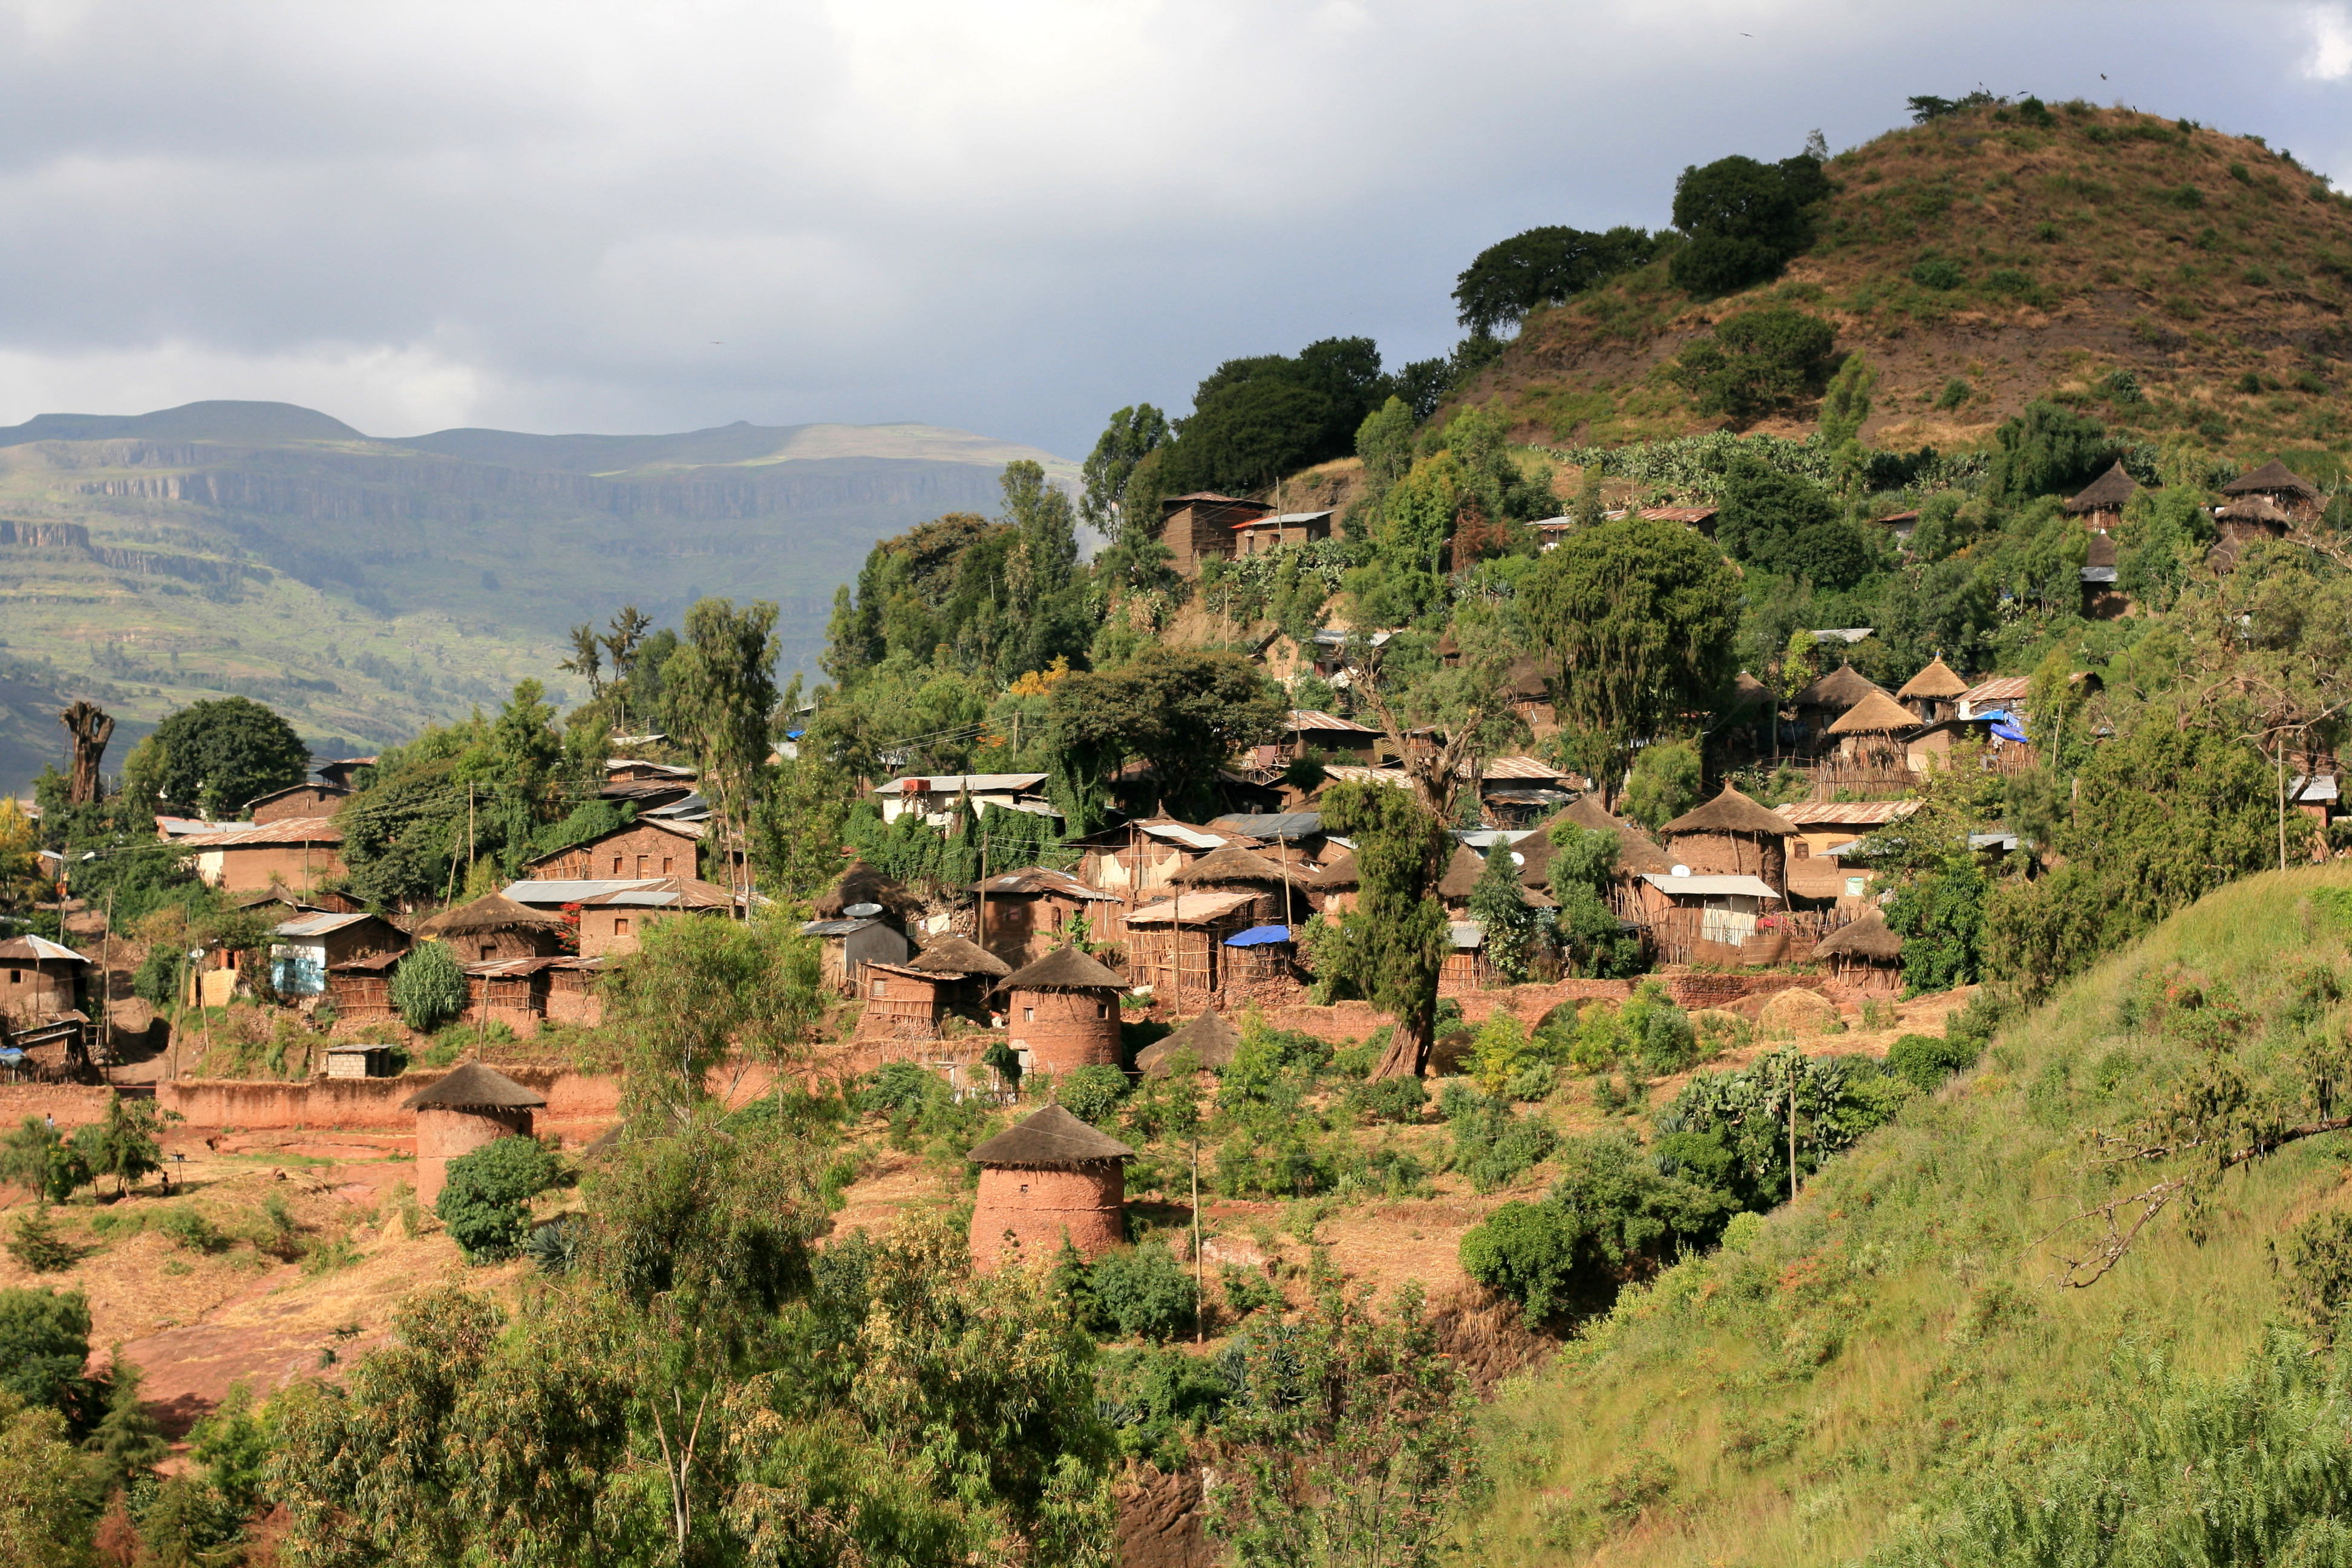 Ethiopia country. Эфиопия поселения. Эфиопия ландшафт. Лалибела. Эфиопия старый город Армения.